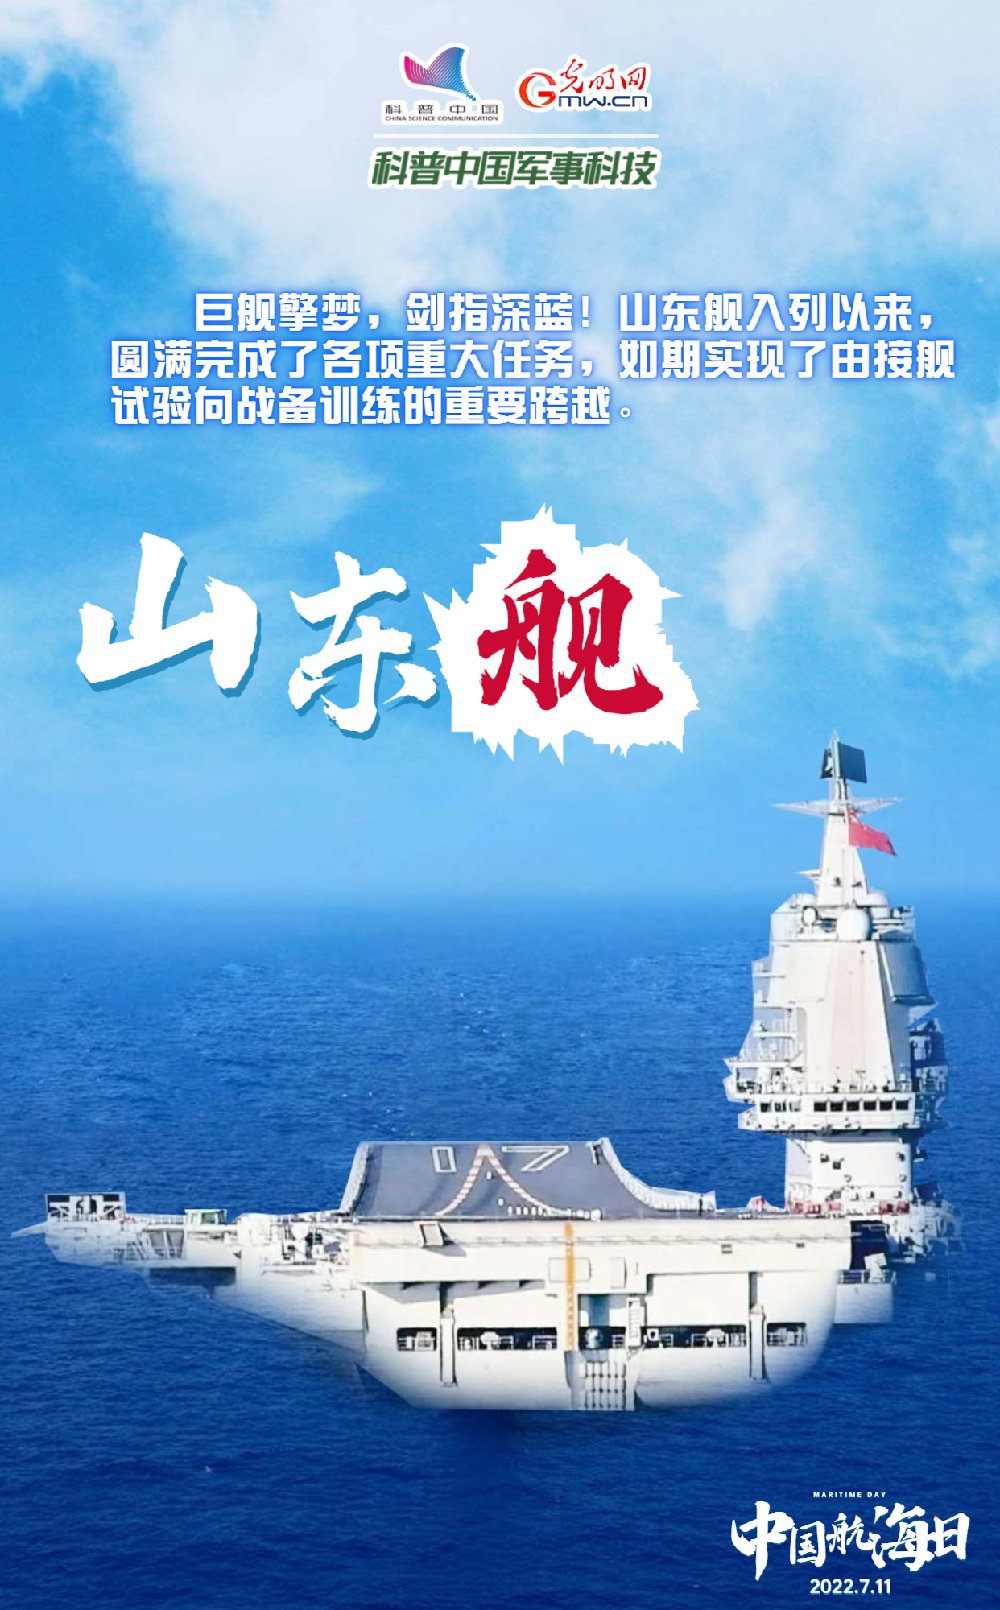 【中国航海日】悠悠华夏万里海江，人民海军向海图强！